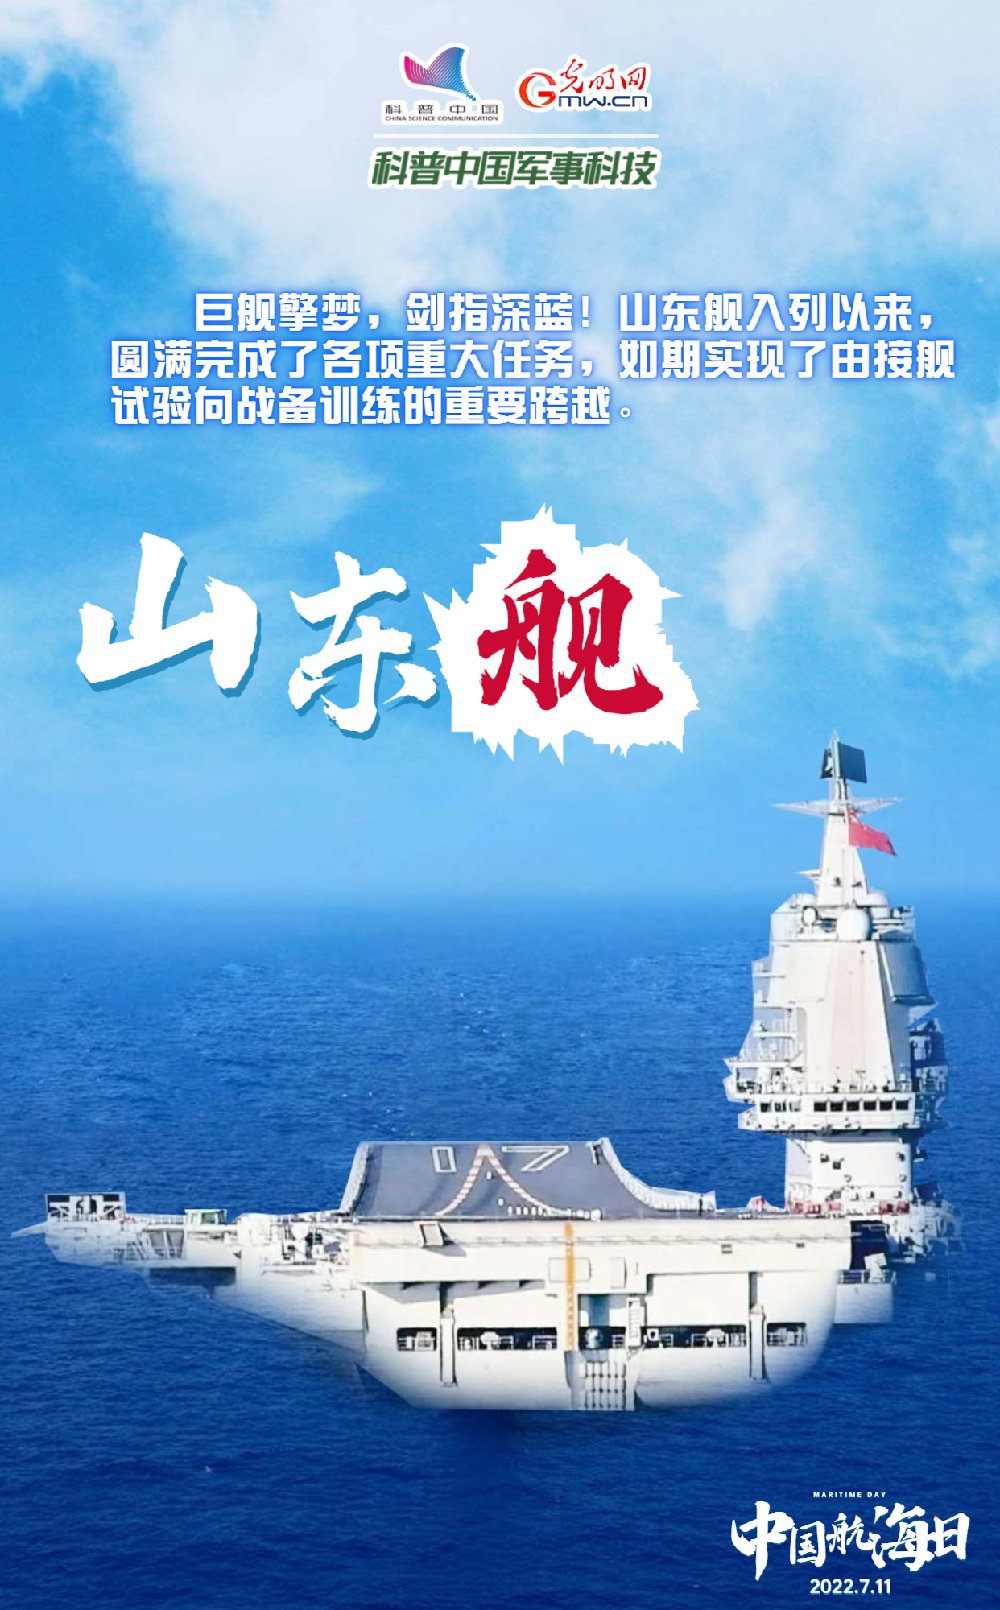 【中国航海日】悠悠华夏万里海江，人民海军向海图强！